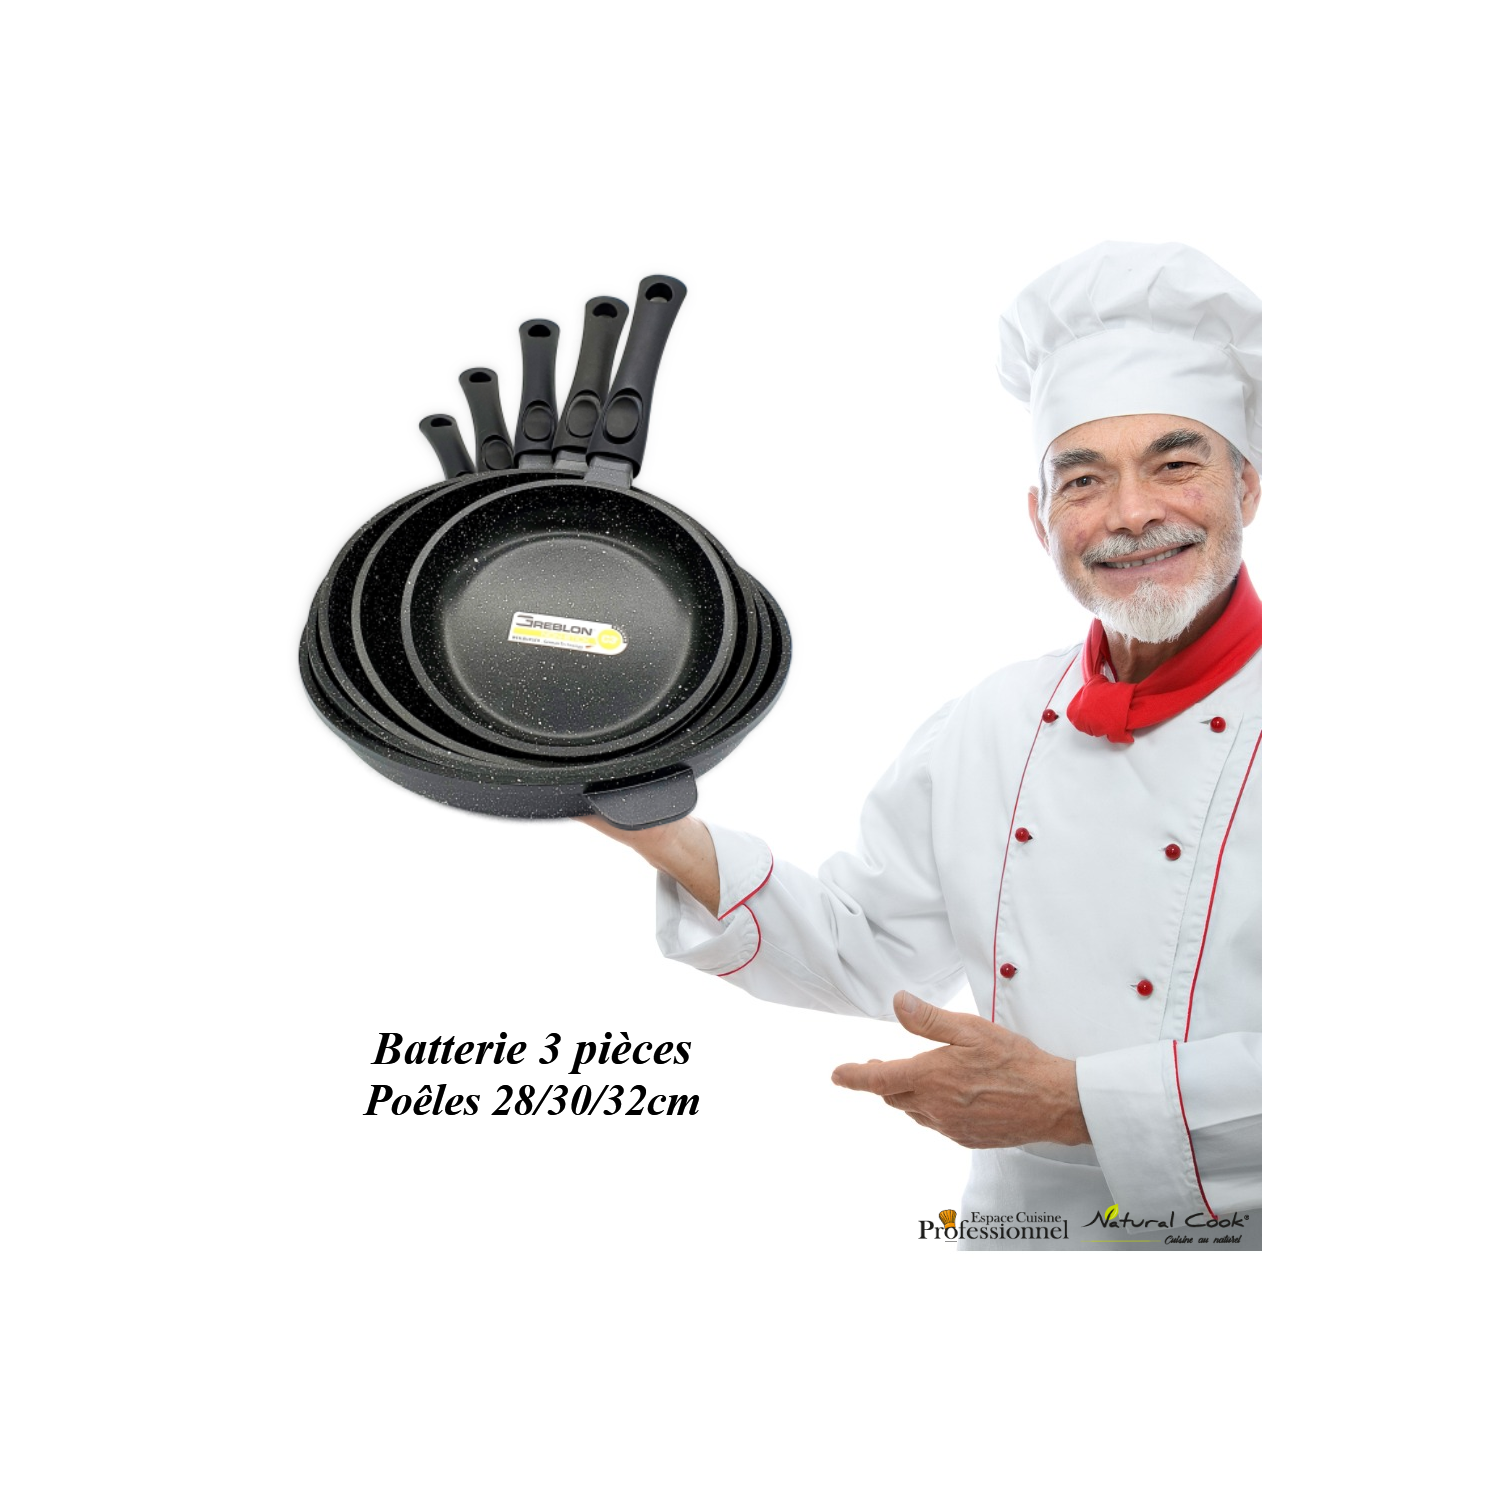 Poêles 28 30 32 cm Espace cuisine Pro 2022